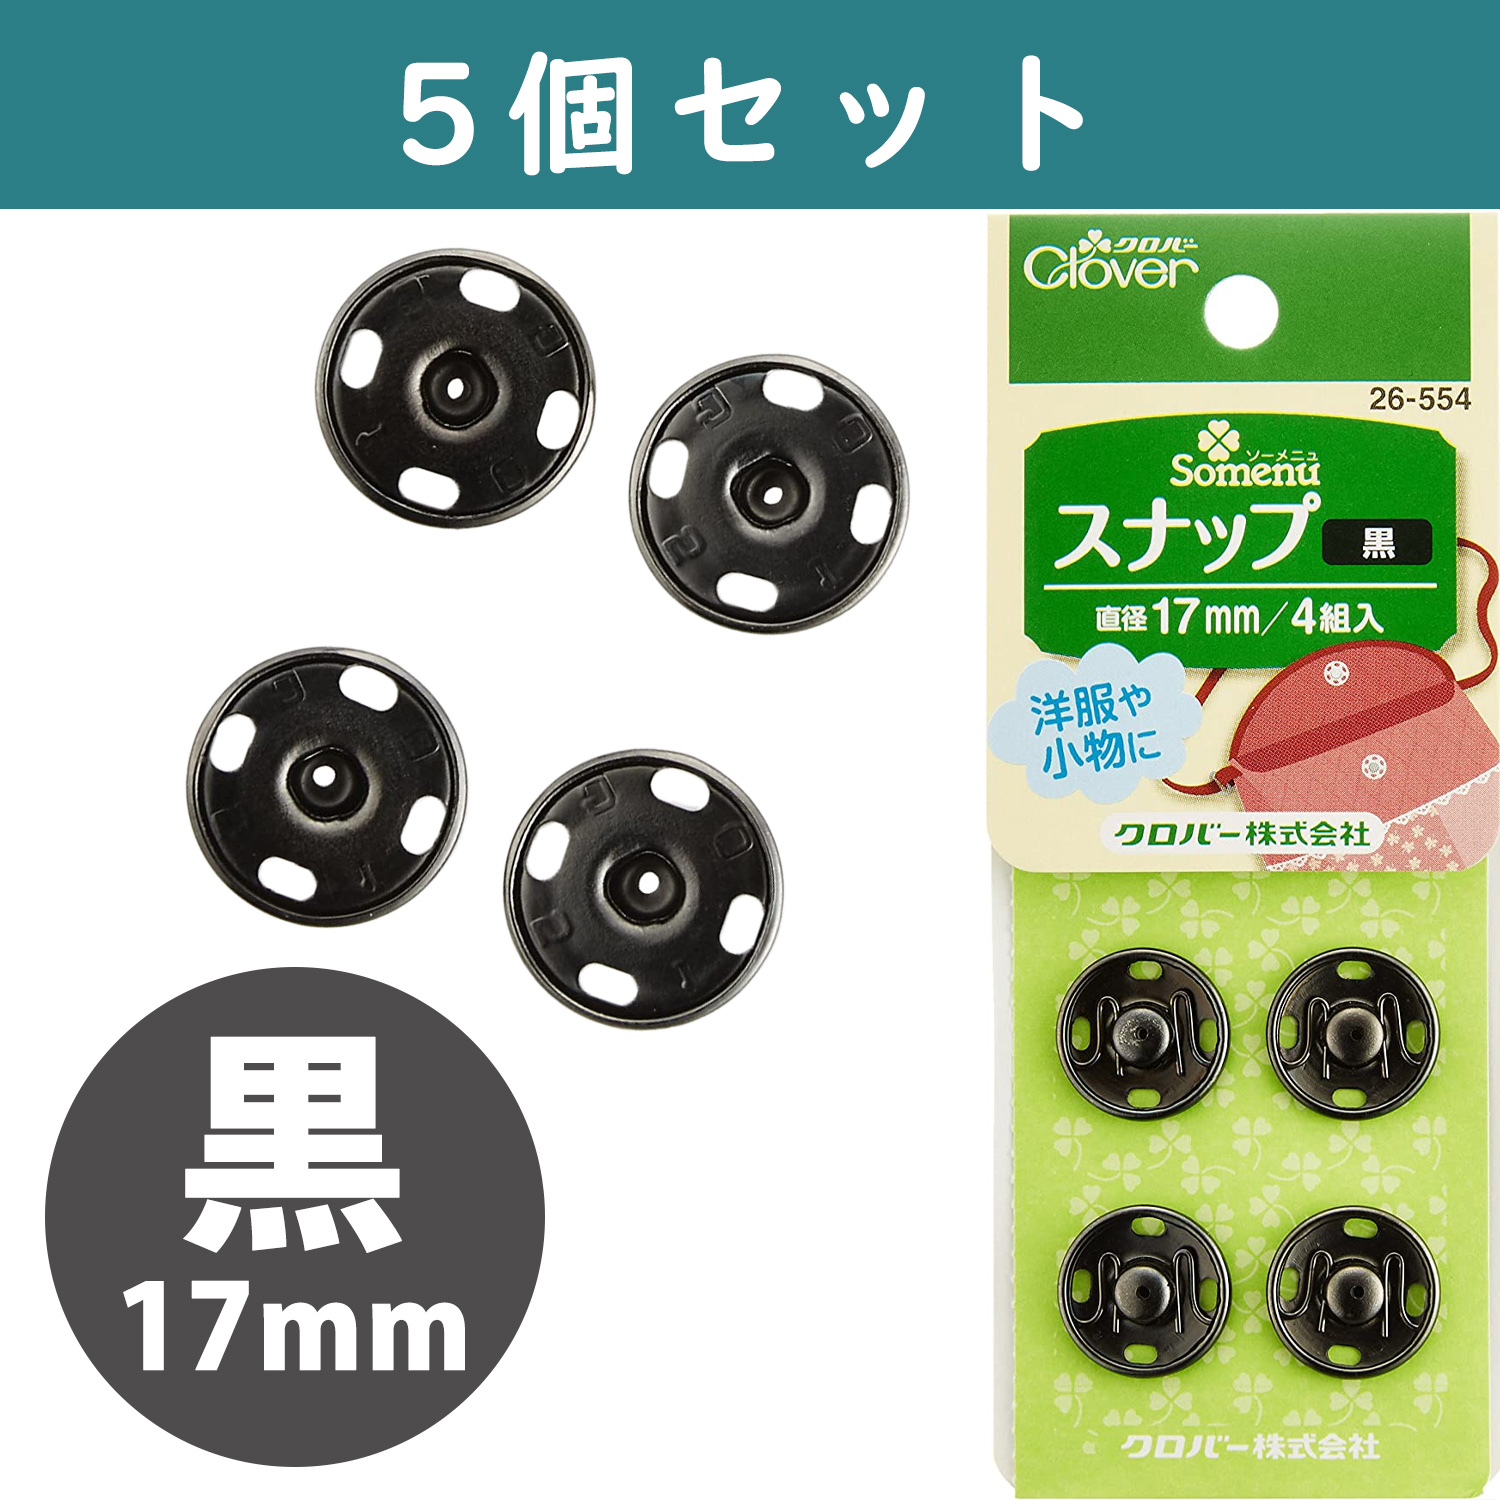 ■【5個】CL26-554-5set スナップ 17mm 4組入り 黒 ×5個　(セット)